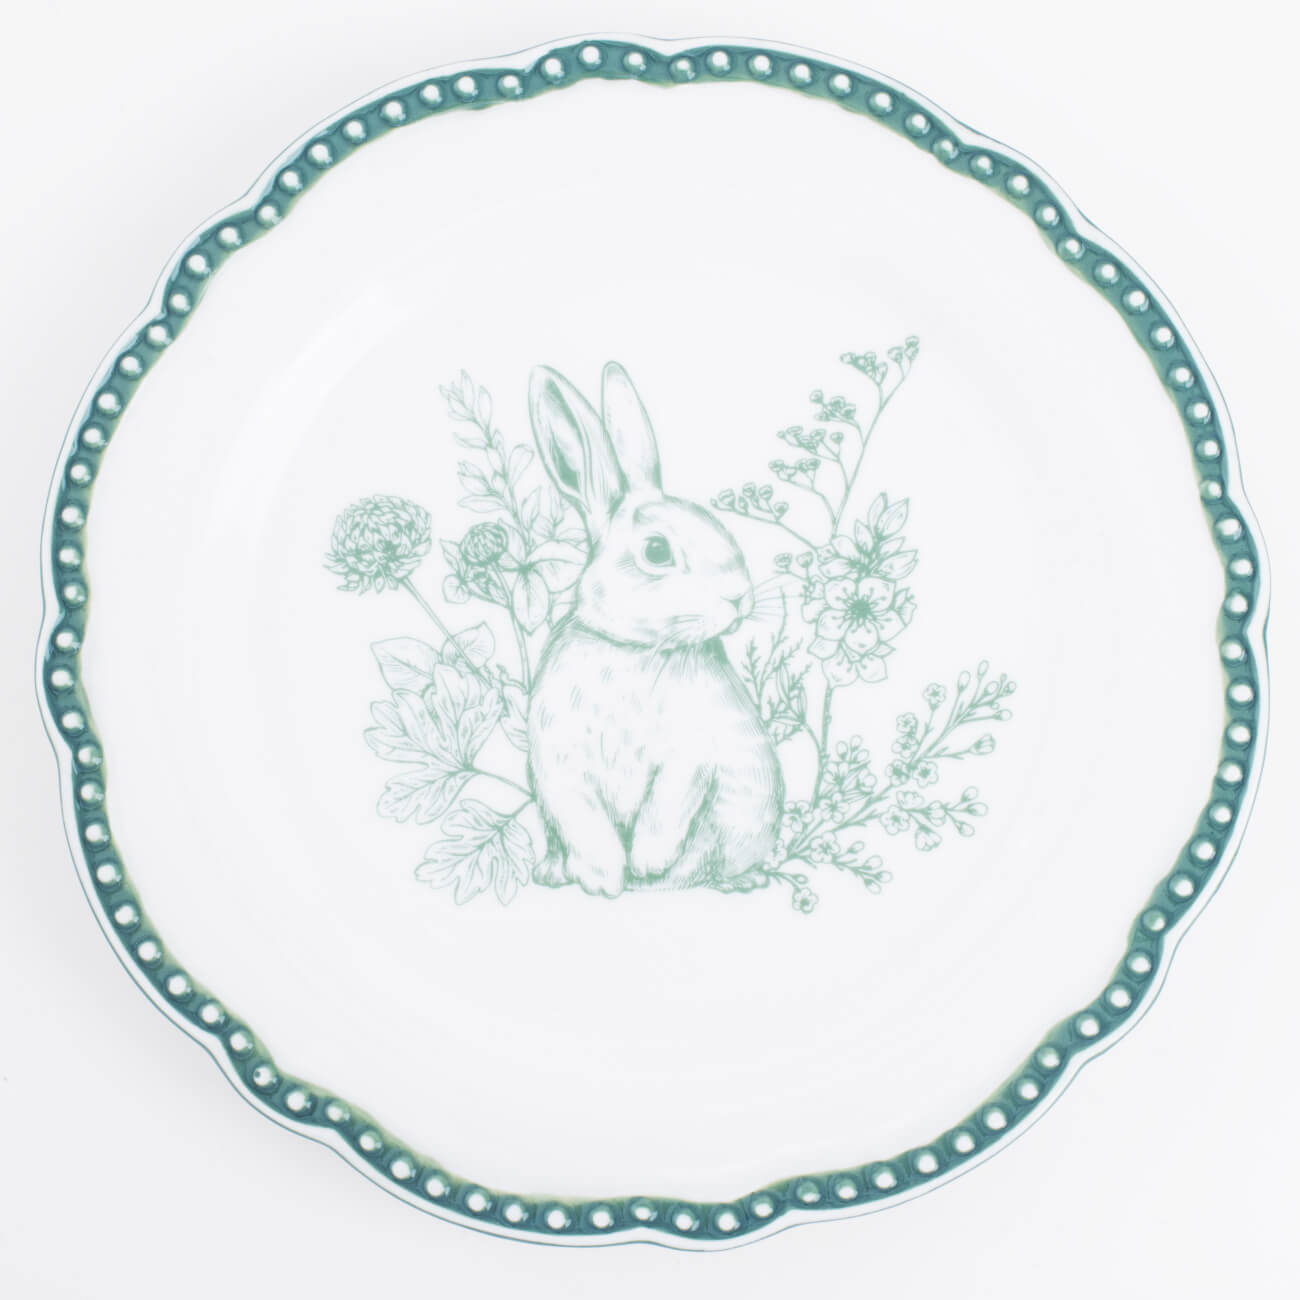 Тарелка закусочная, 21 см, керамика, бело-зеленая, Кролик в цветах, Easter blooming изображение № 1